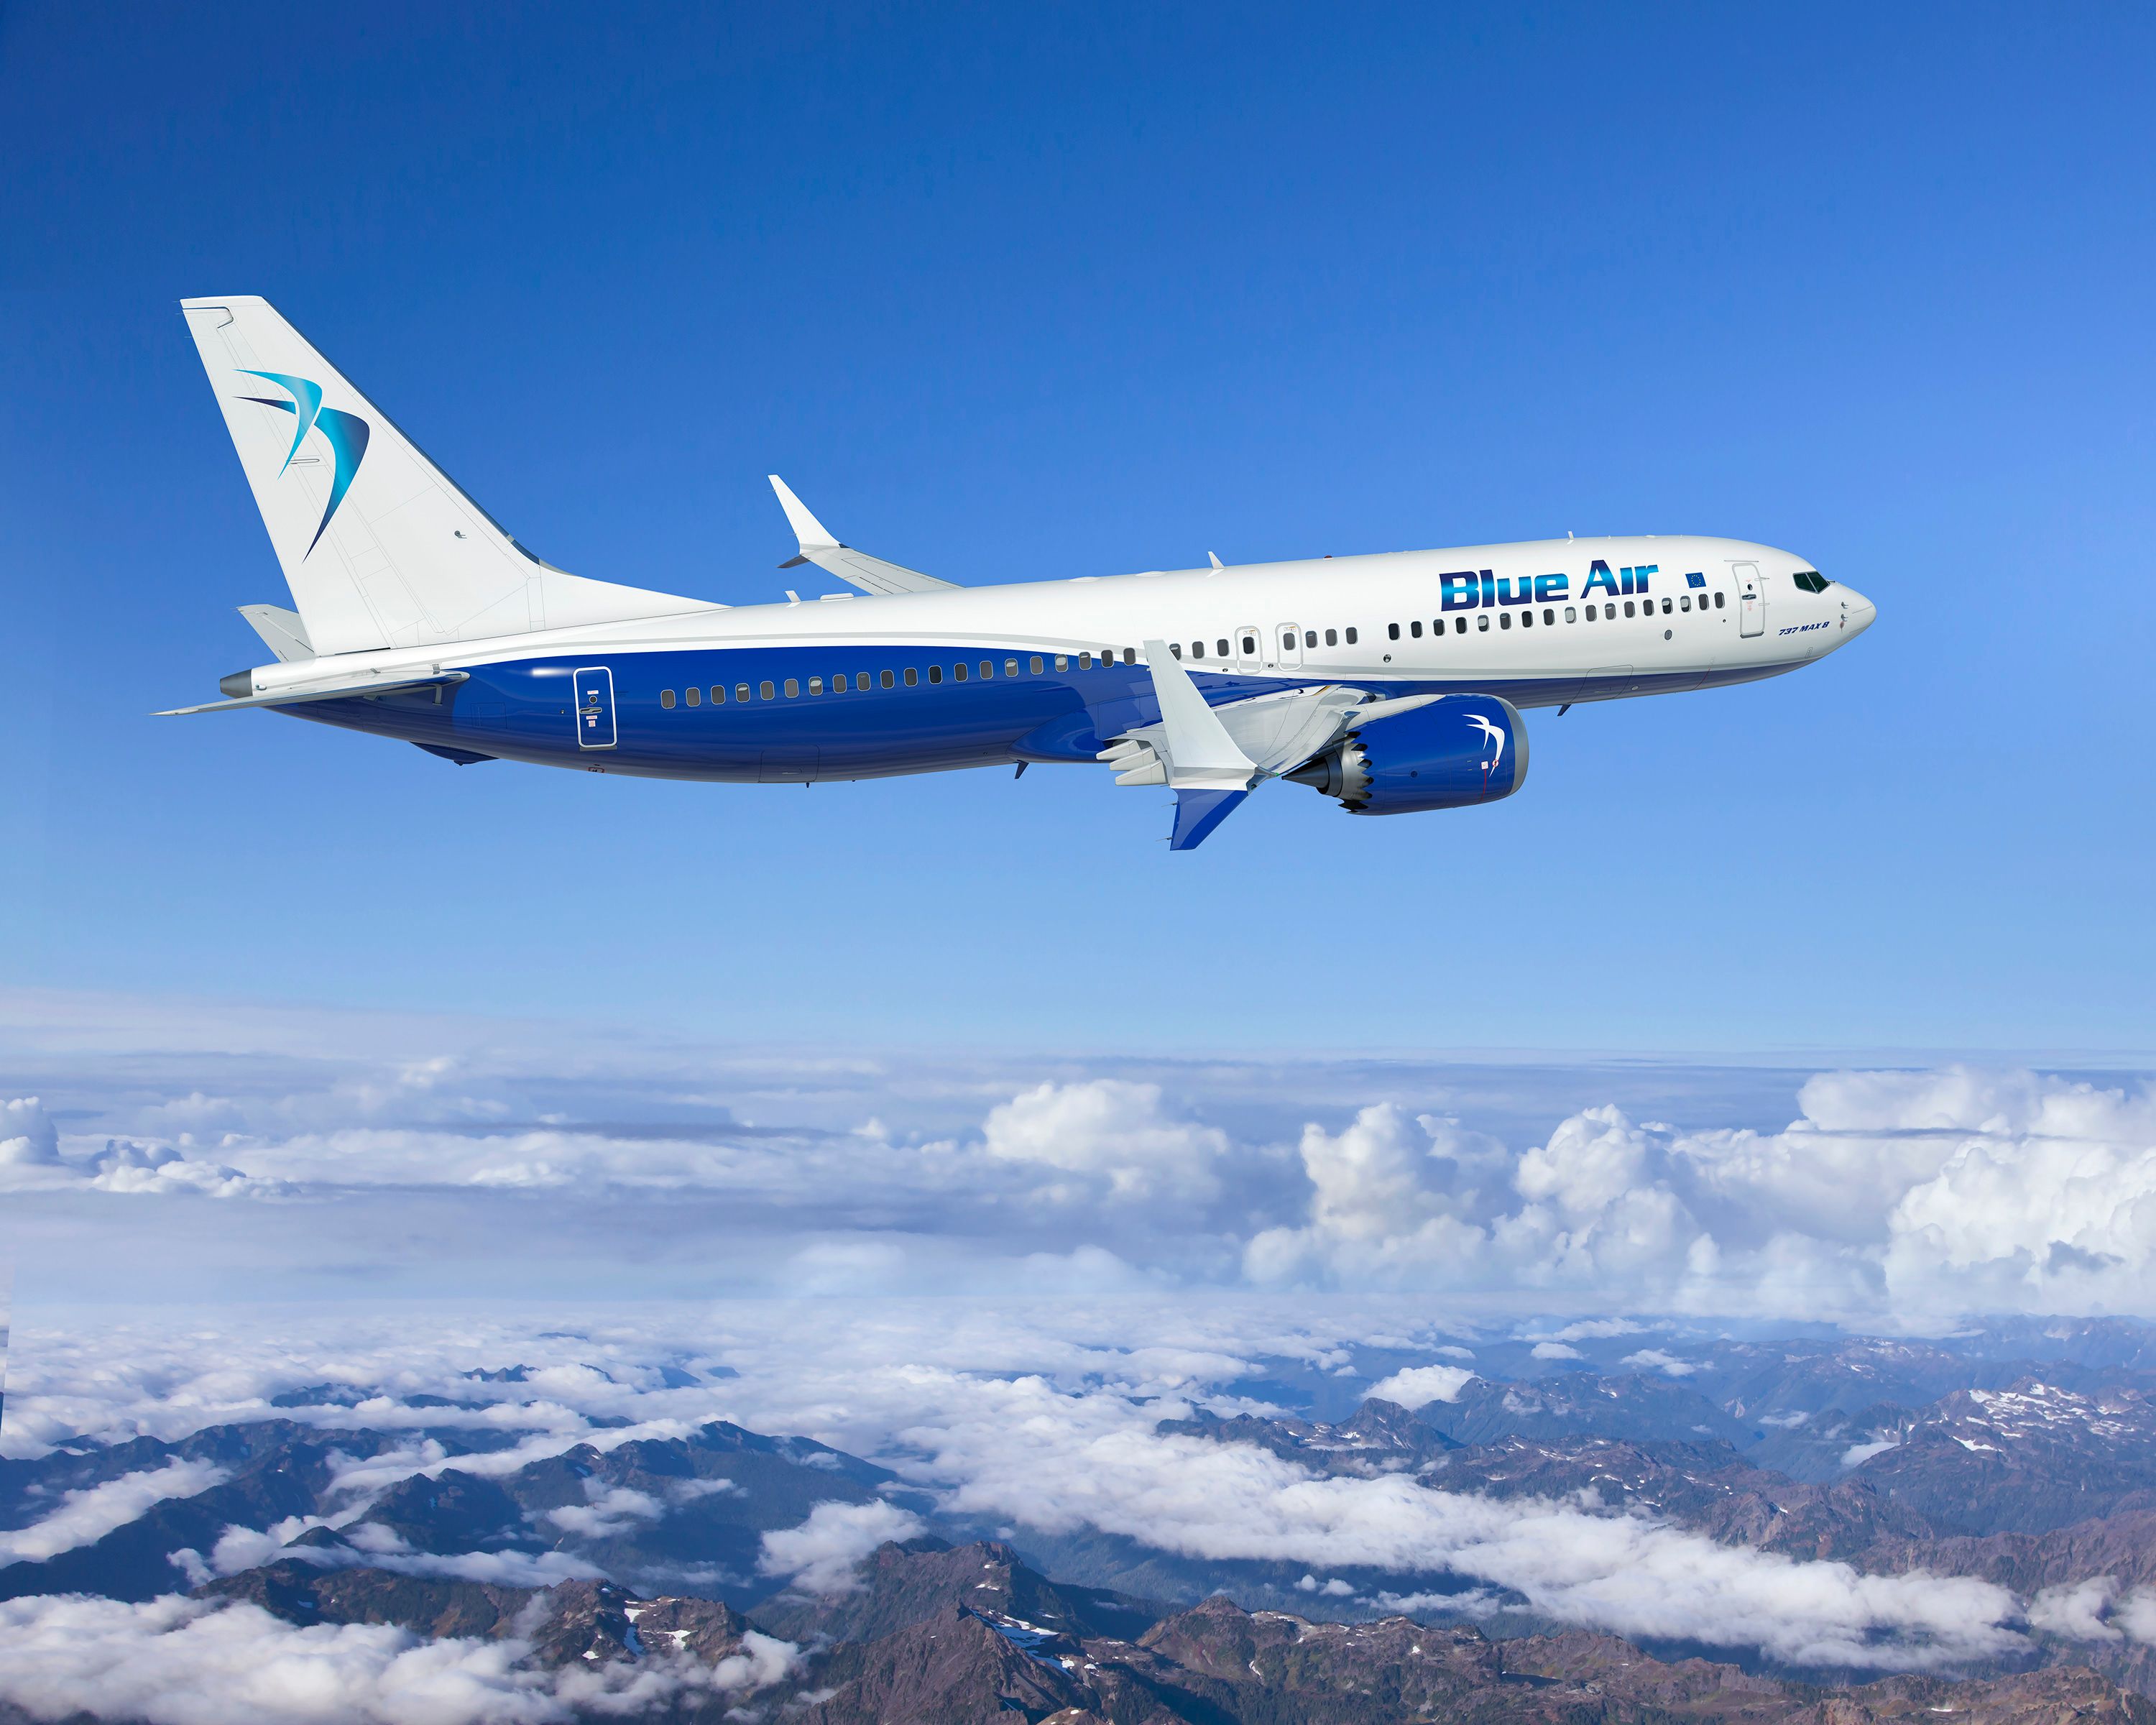 K66685 - blue air 737 MAX